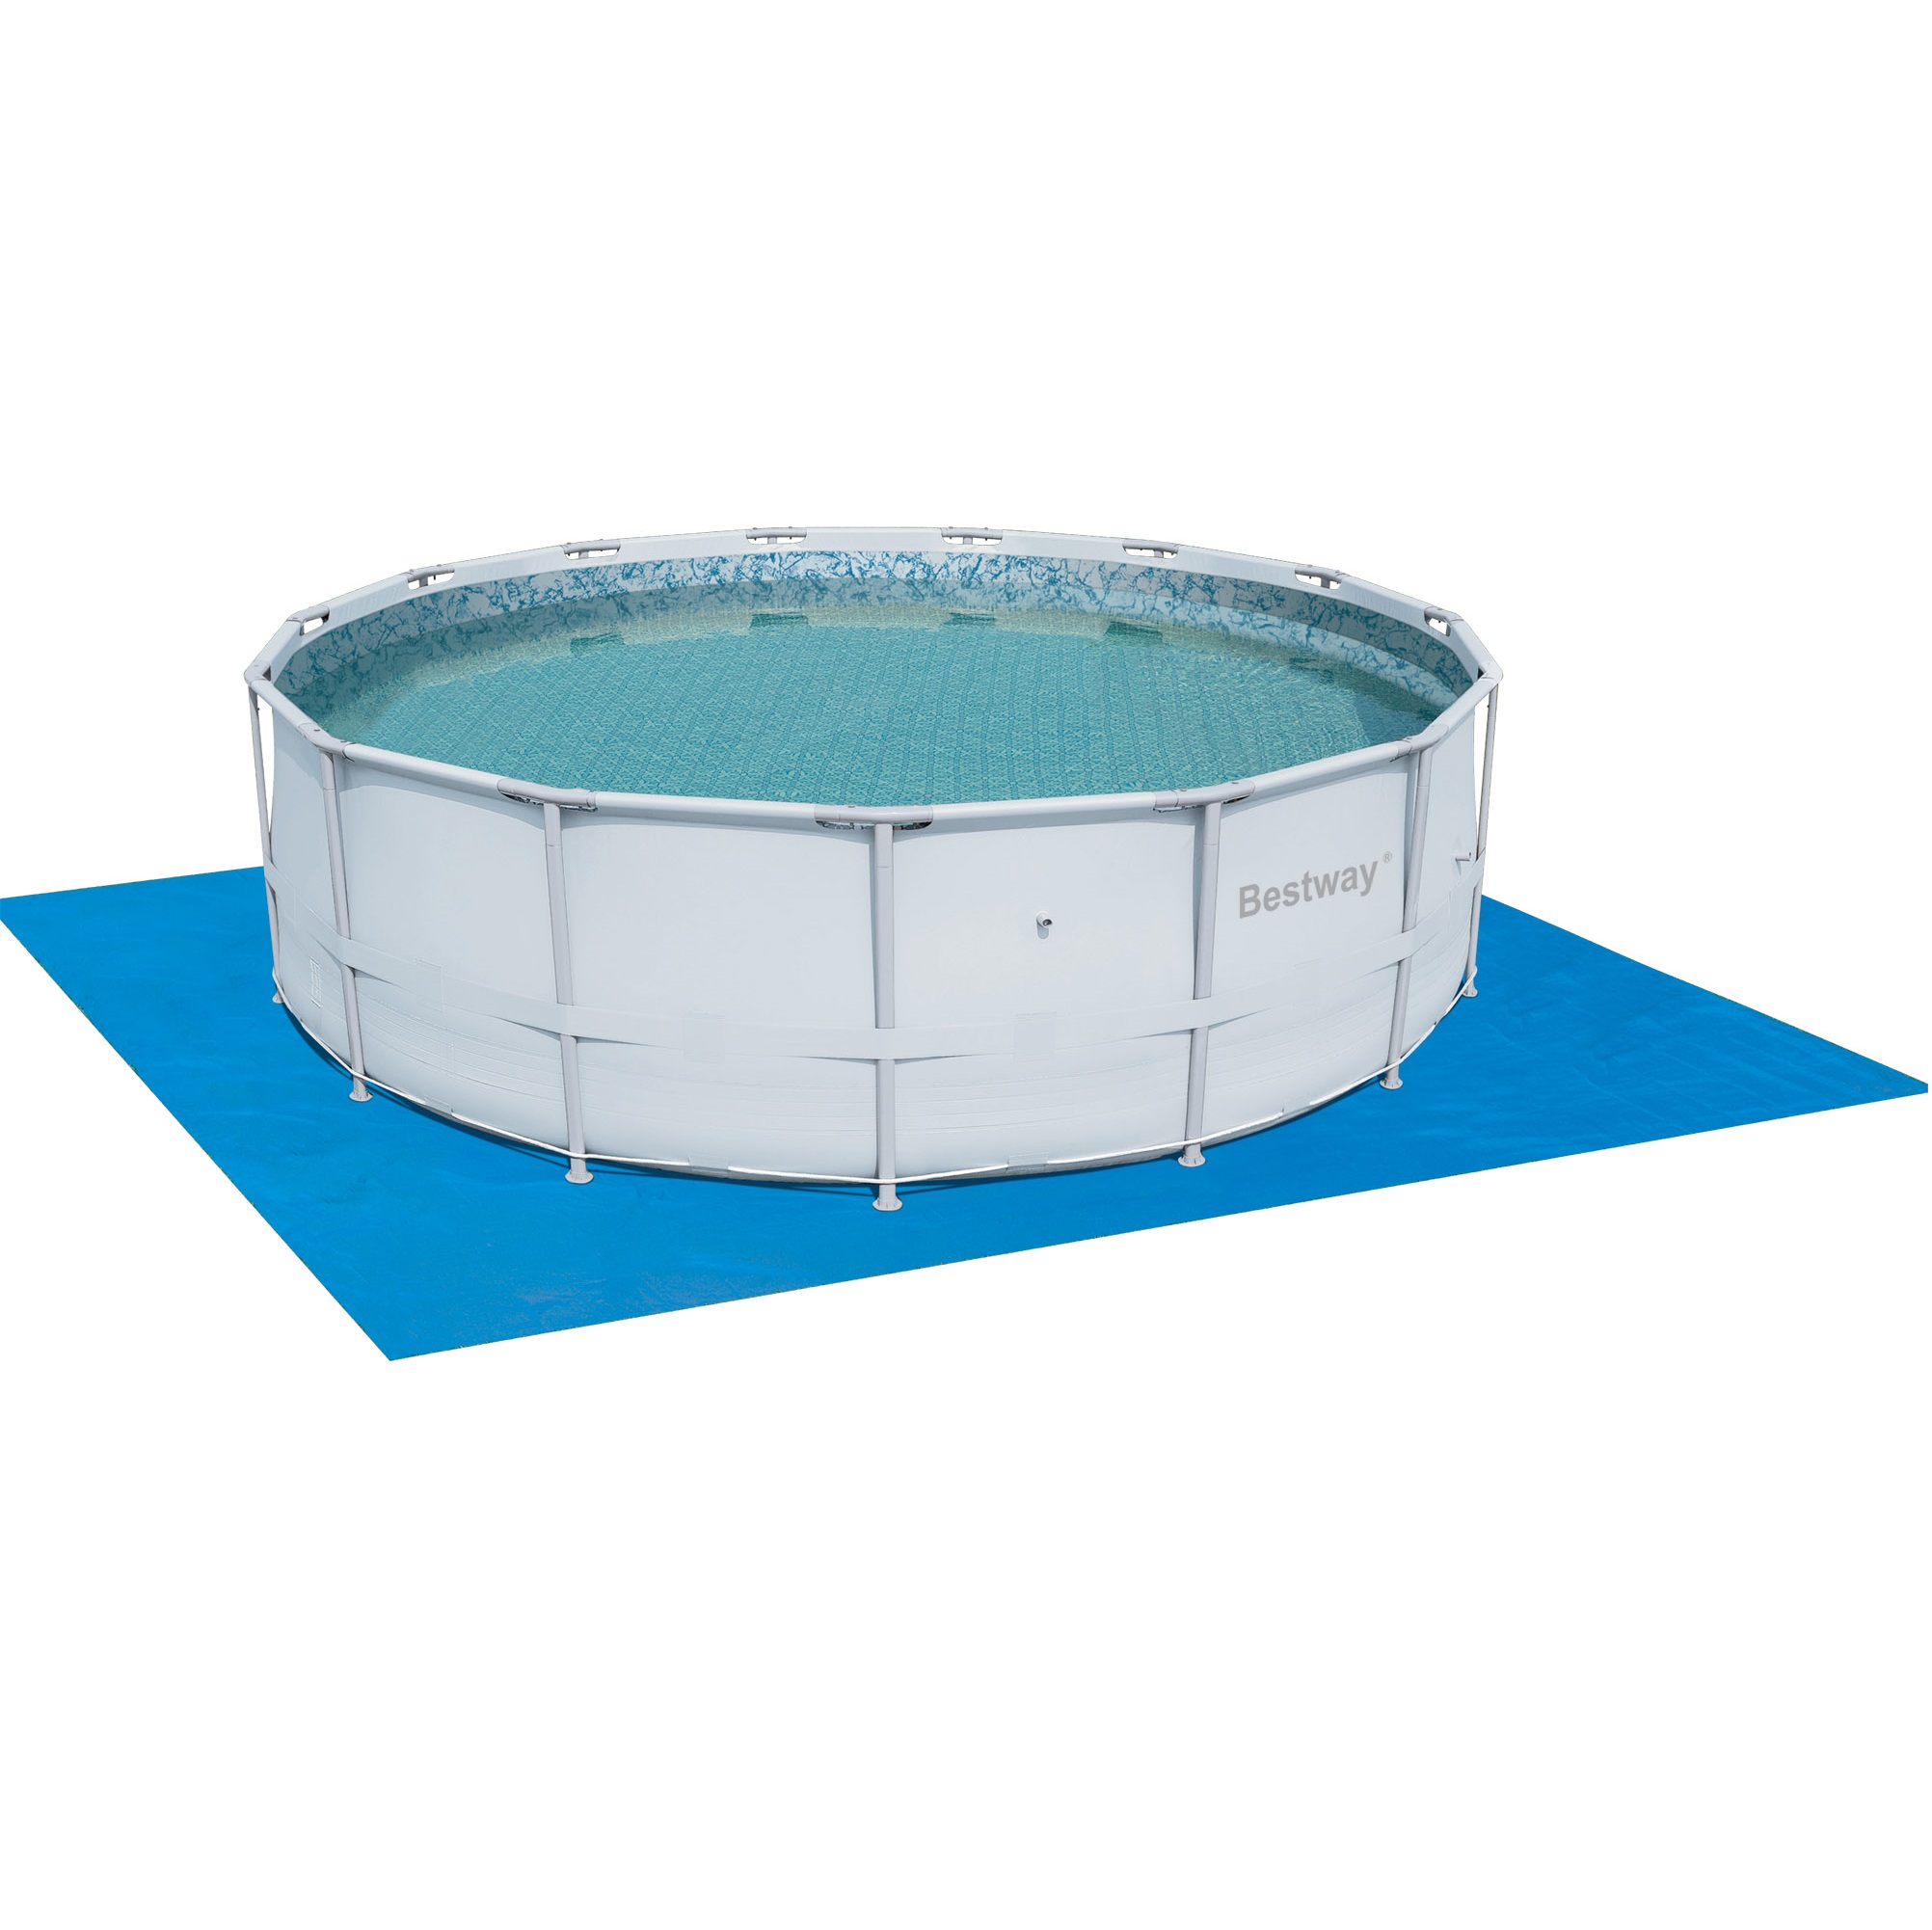 Подложка для бассейна Bestway 488х488 см подложка для бассейна bestway 58220 полиэтилен 50x50 см цвет синий